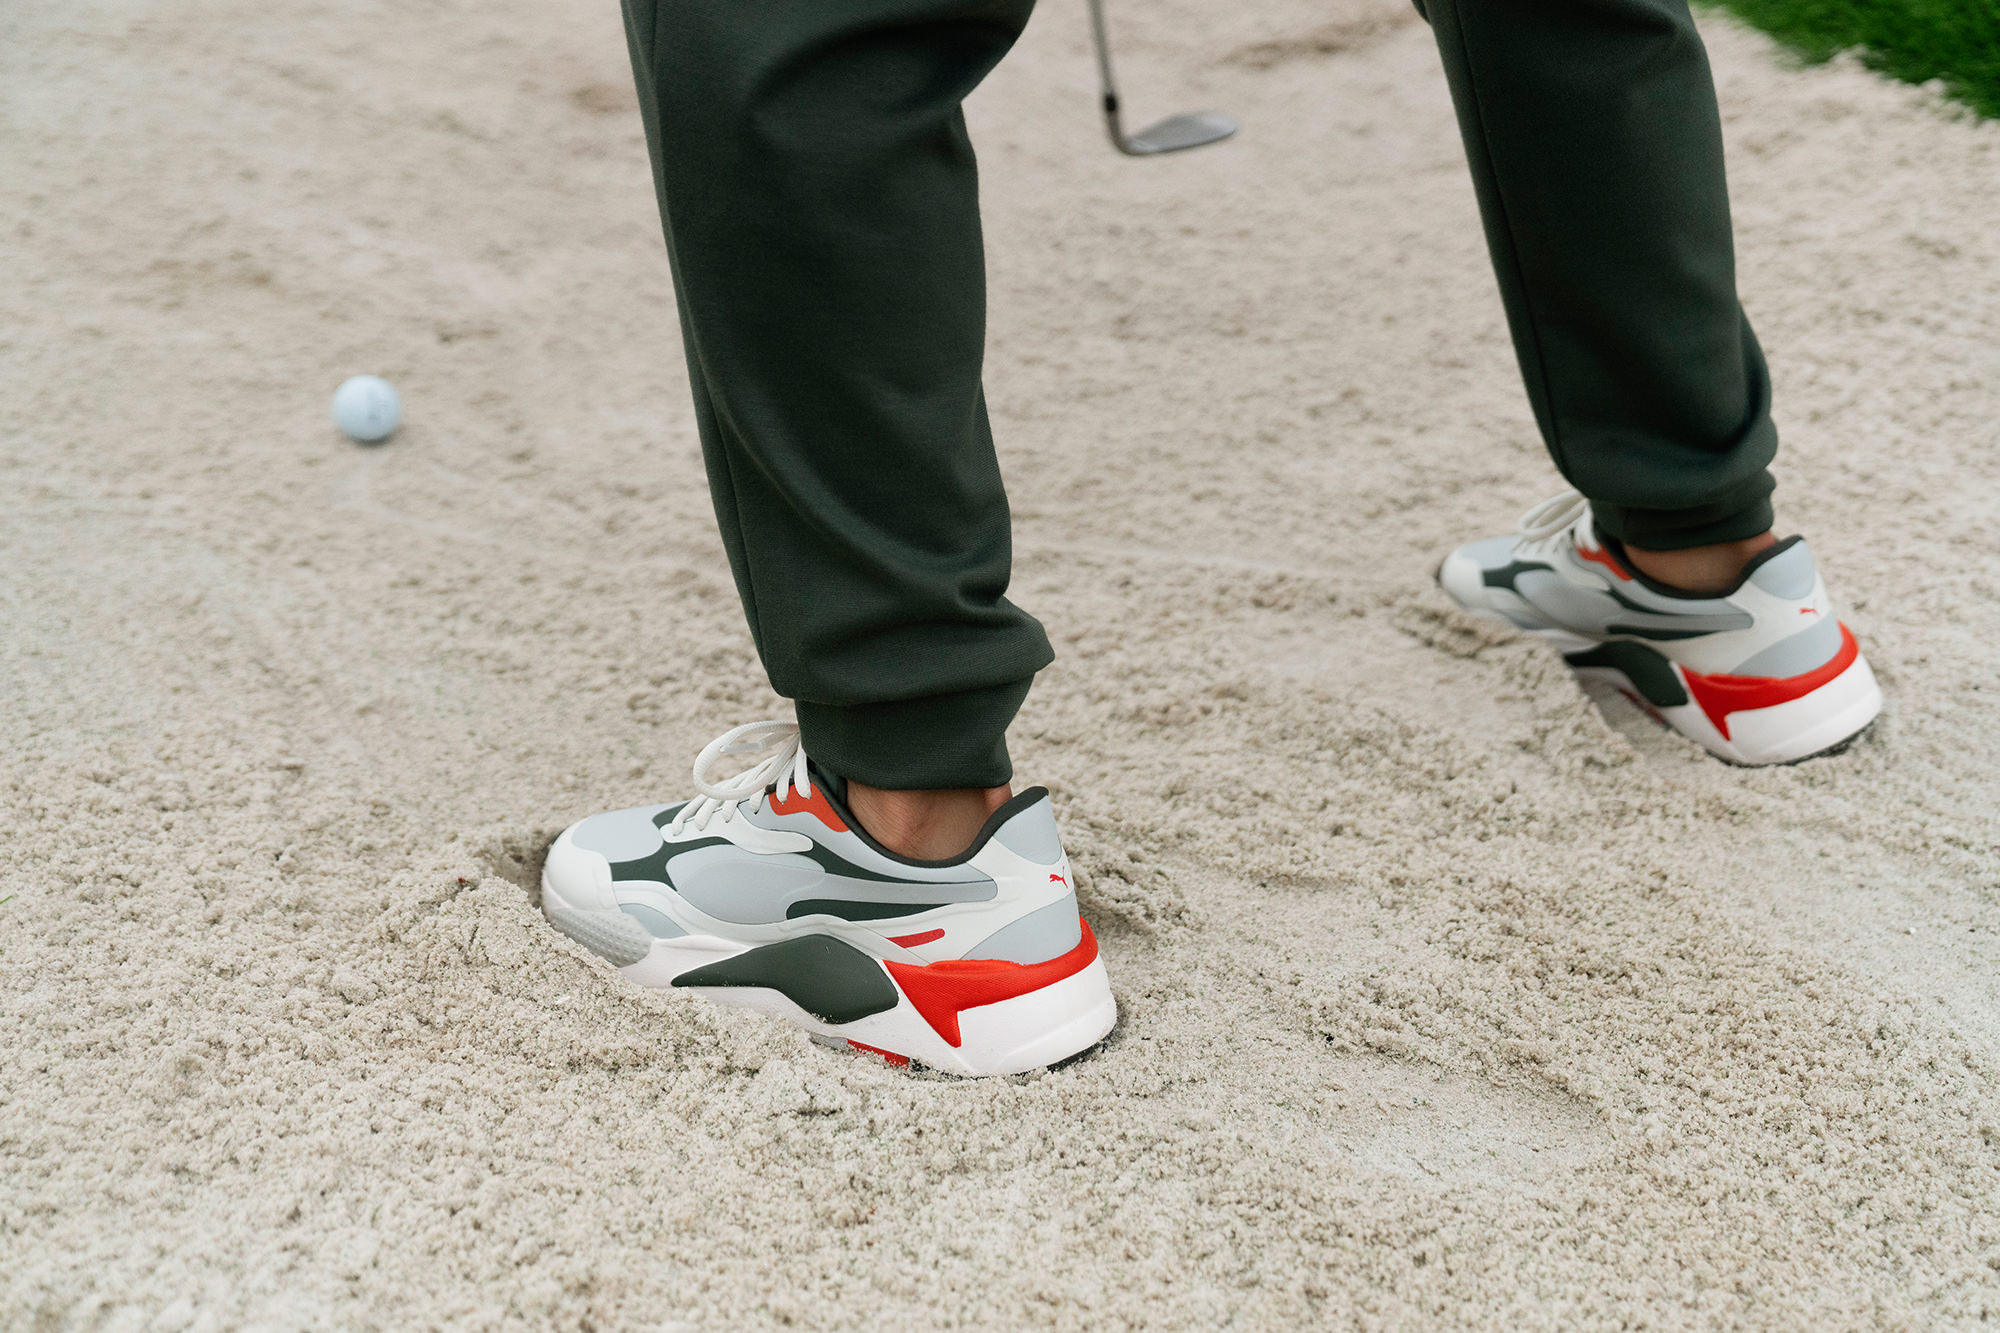 Puma RS G golf shoe